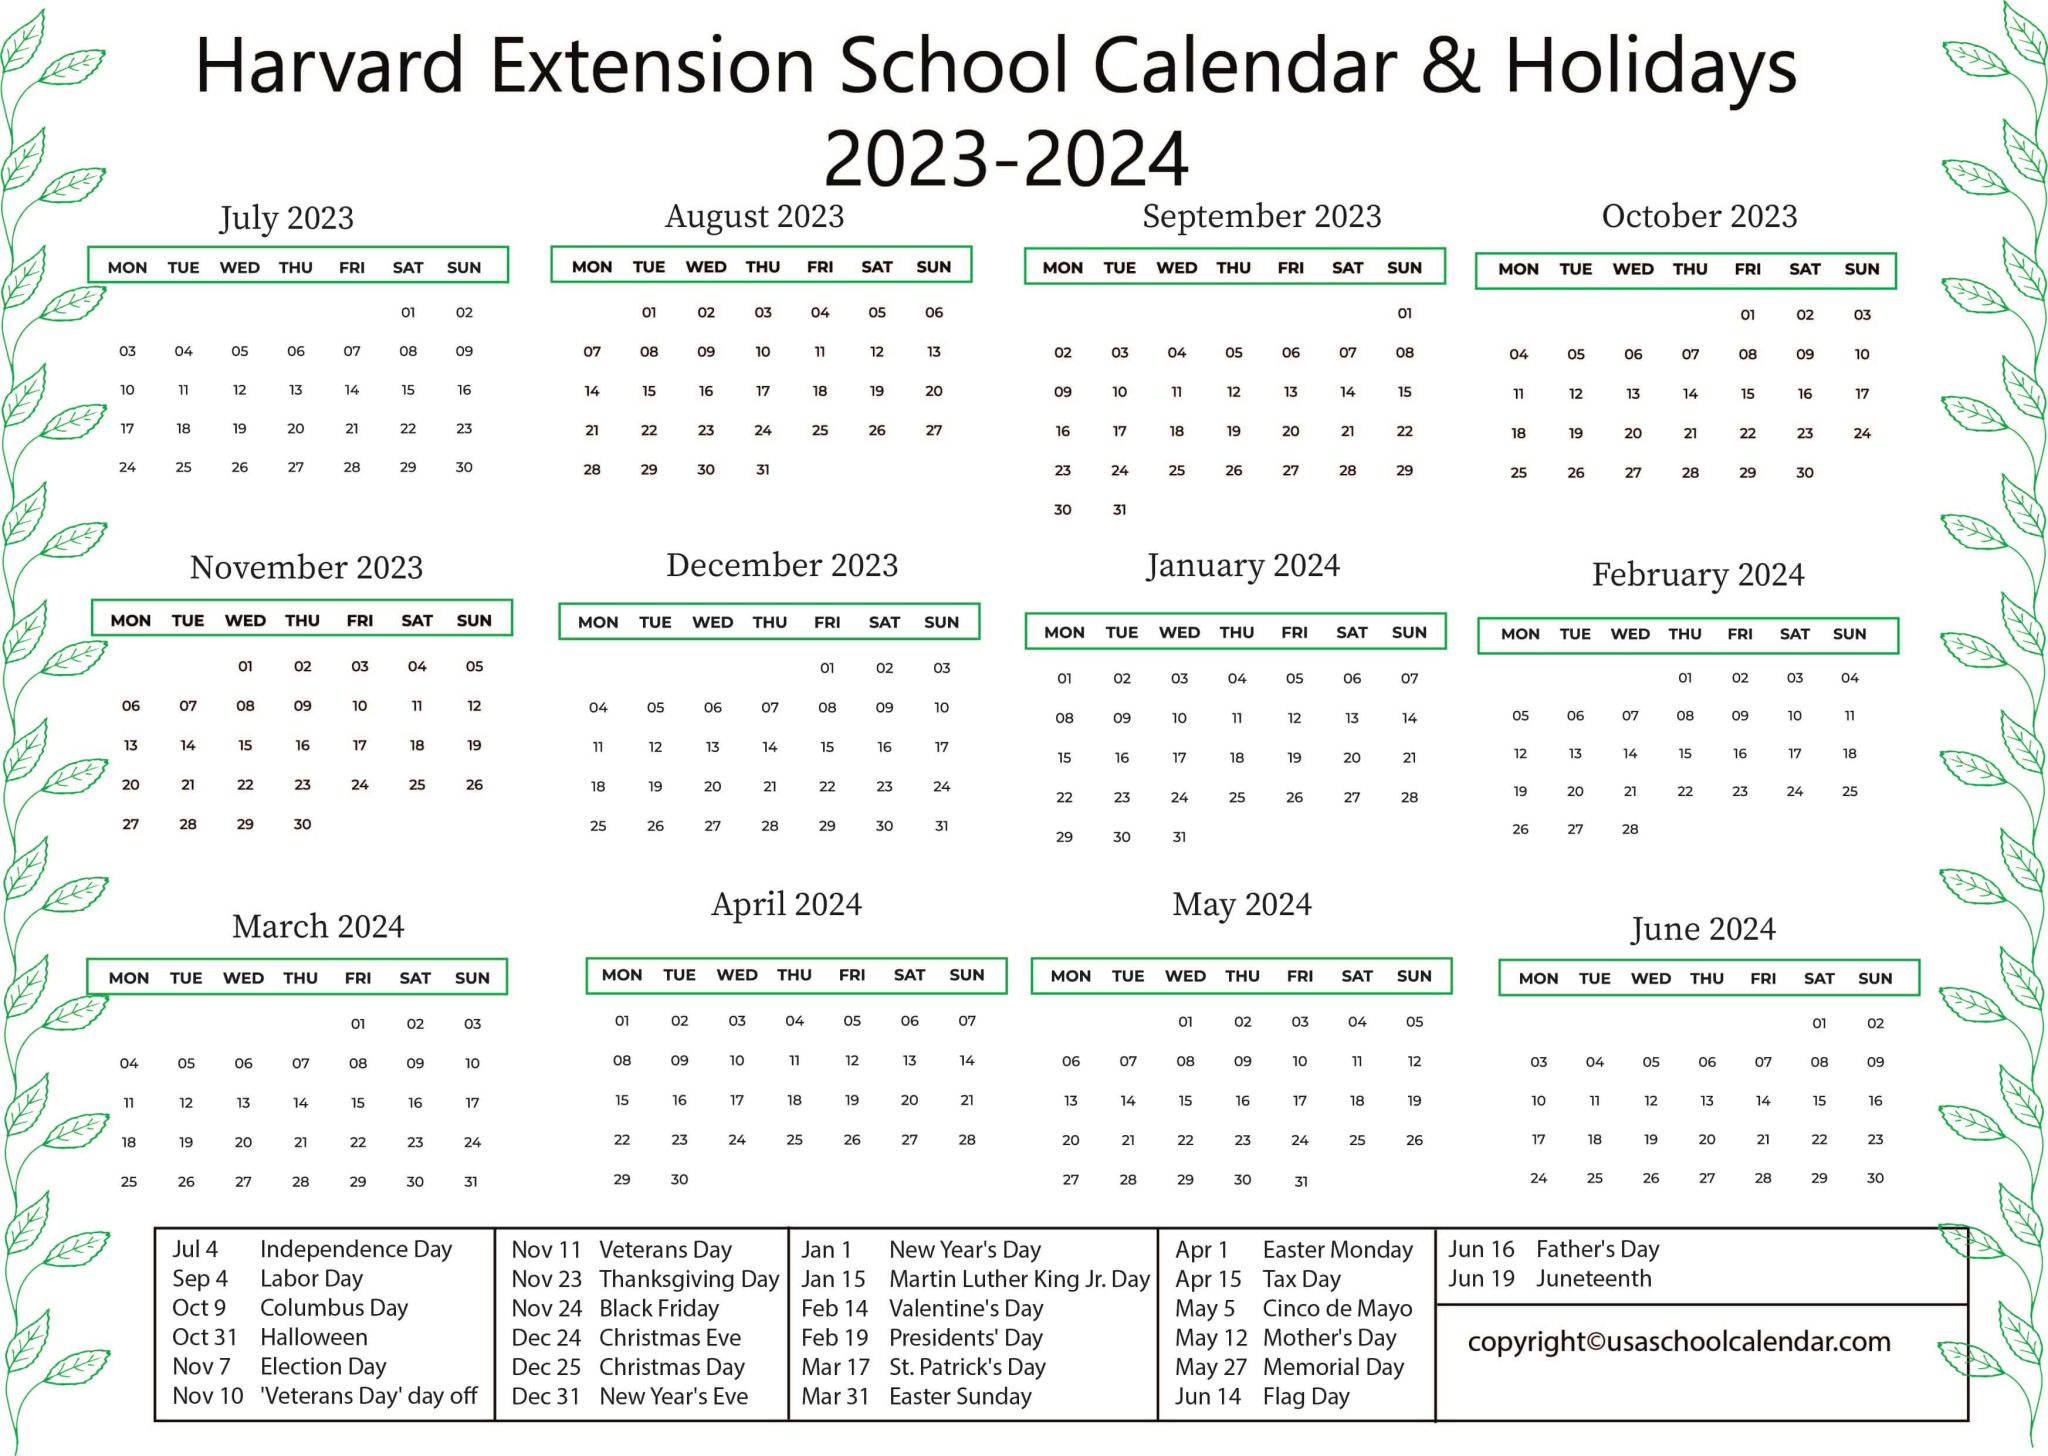 Harvard Extension School Calendar Holidays 2023 2024